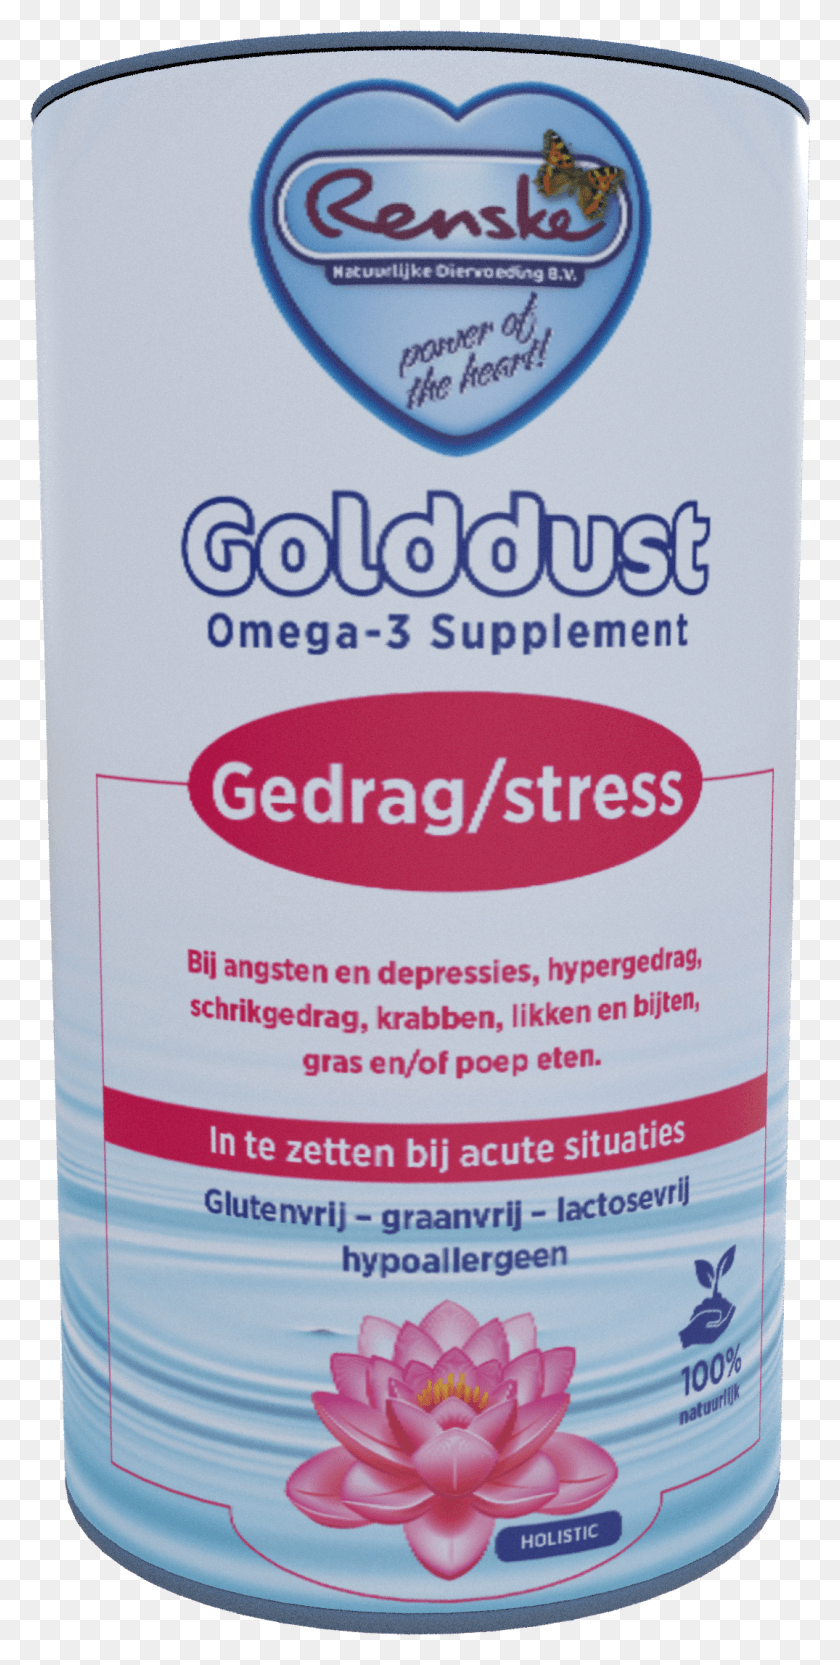 1075x2213 Golddust Gedrag En Stress Renske Golddust 2 Fearstress, Botella, Cosméticos, Aluminio Hd Png